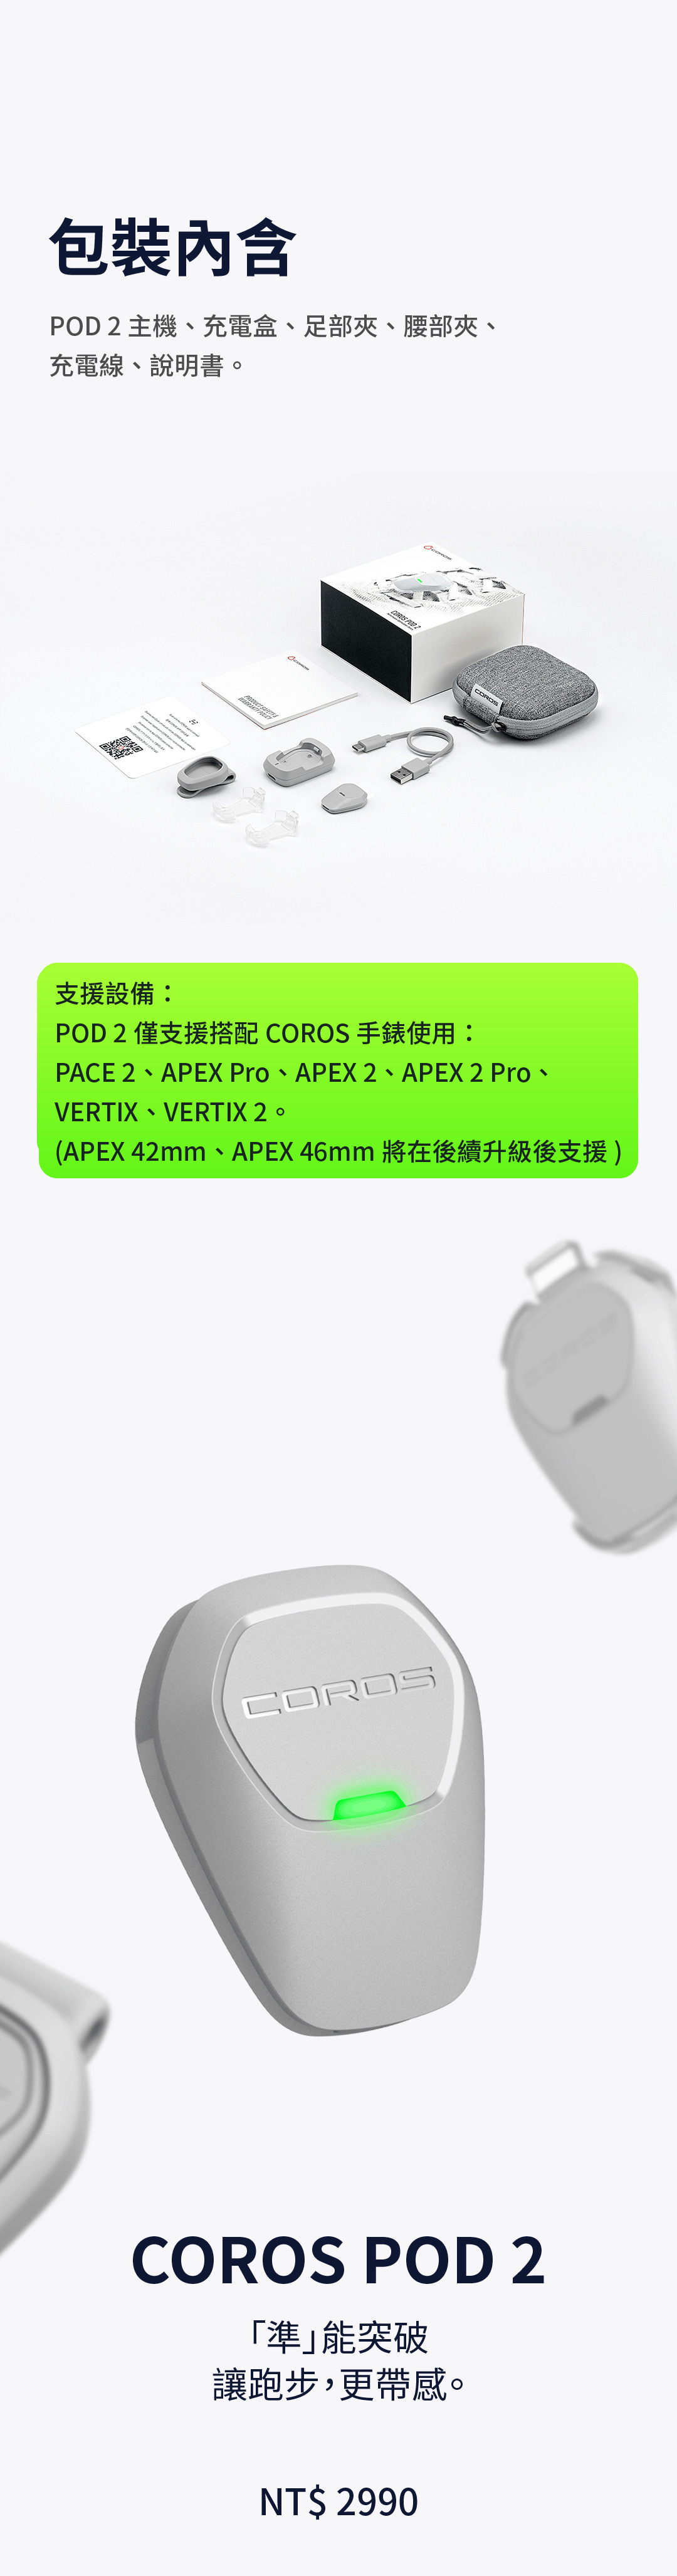 包裝內含 POD 2 主機、充電盒、足部夾、腰部夾、充電線、說明書。適配設備： POD 2僅支援搭配COROS高馳手錶使用： PACE 2、APEX PRO、APEX 2、APEX 2 Pro、VERTIX、VERTIX 2。 (APEX 42mm、APEX 46mm將在後續升級後支援)。COROS 高馳 POD 2 「準」能突破 讓跑步，更帶感。